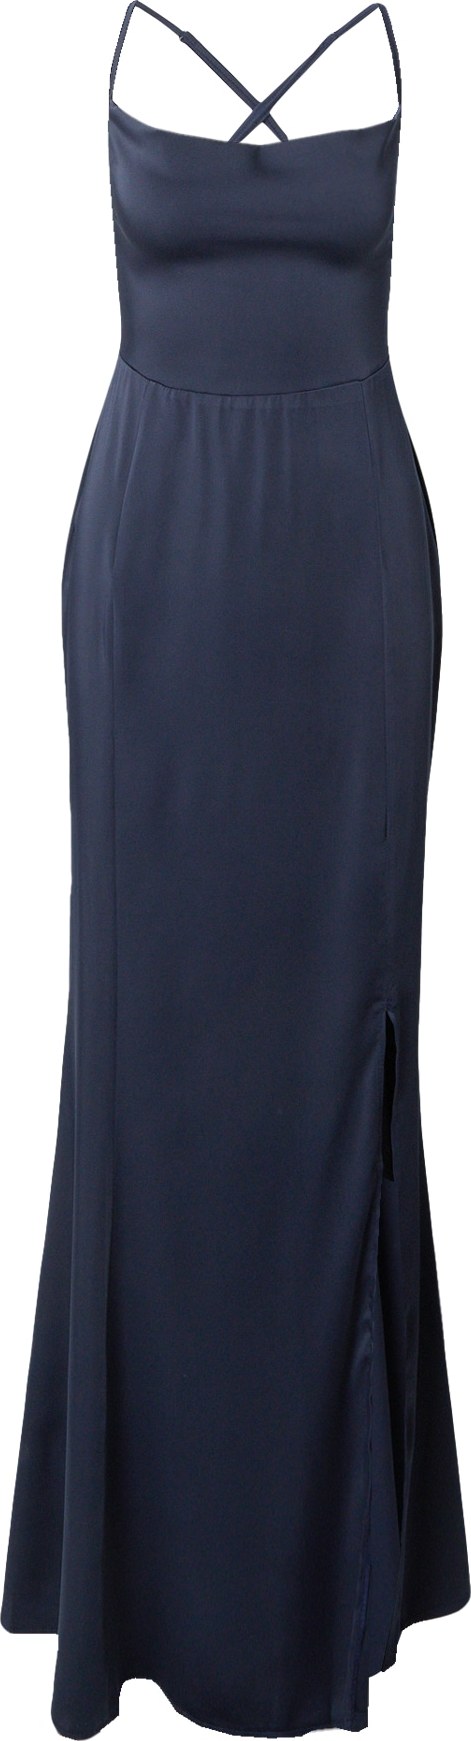 Společenské šaty Lipsy námořnická modř